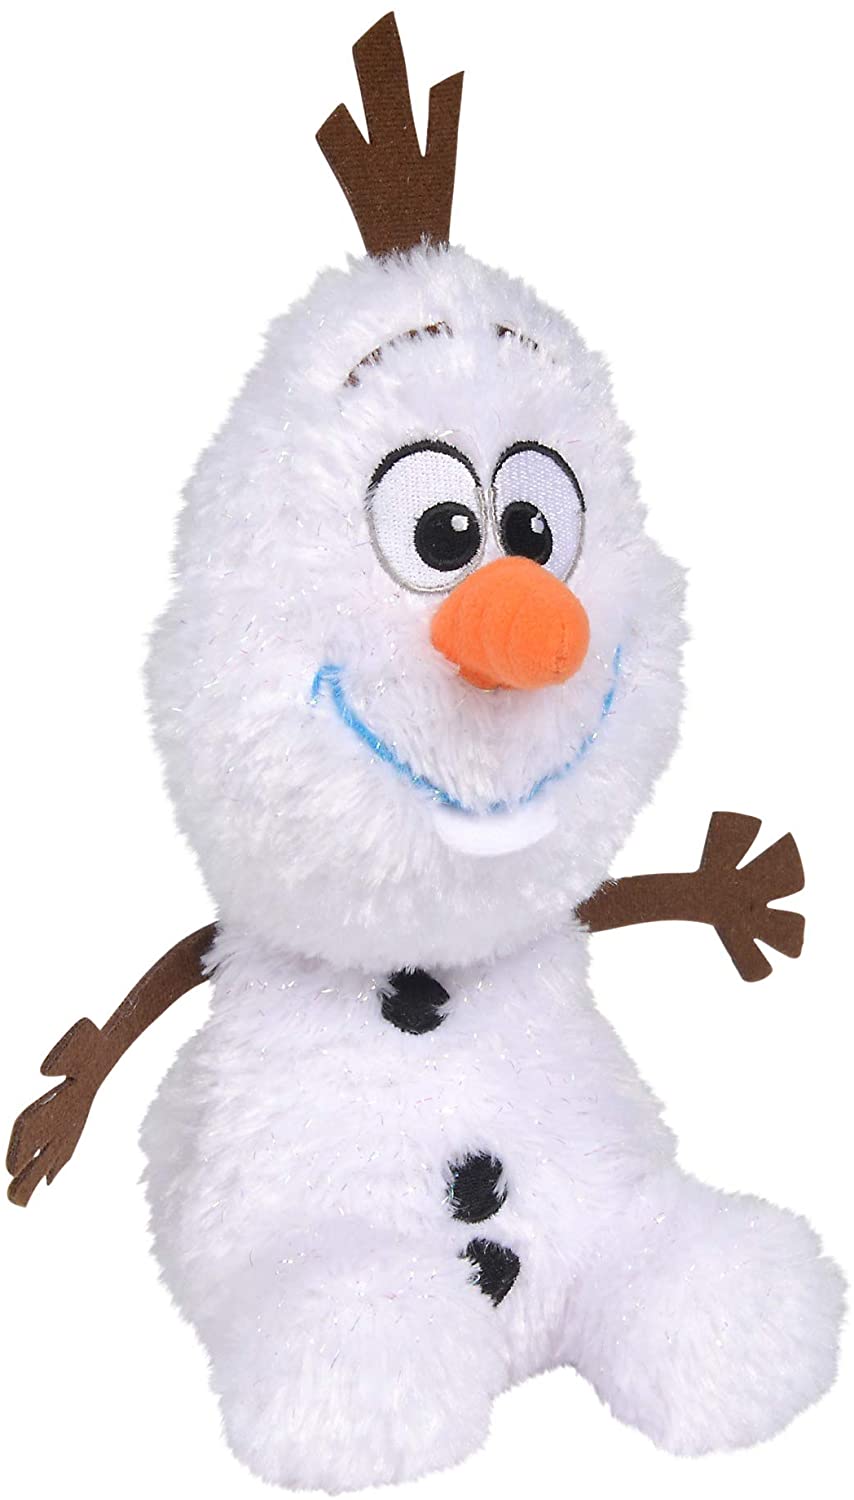 Disney - Friends Style Olaf Plush Toy - 25cm